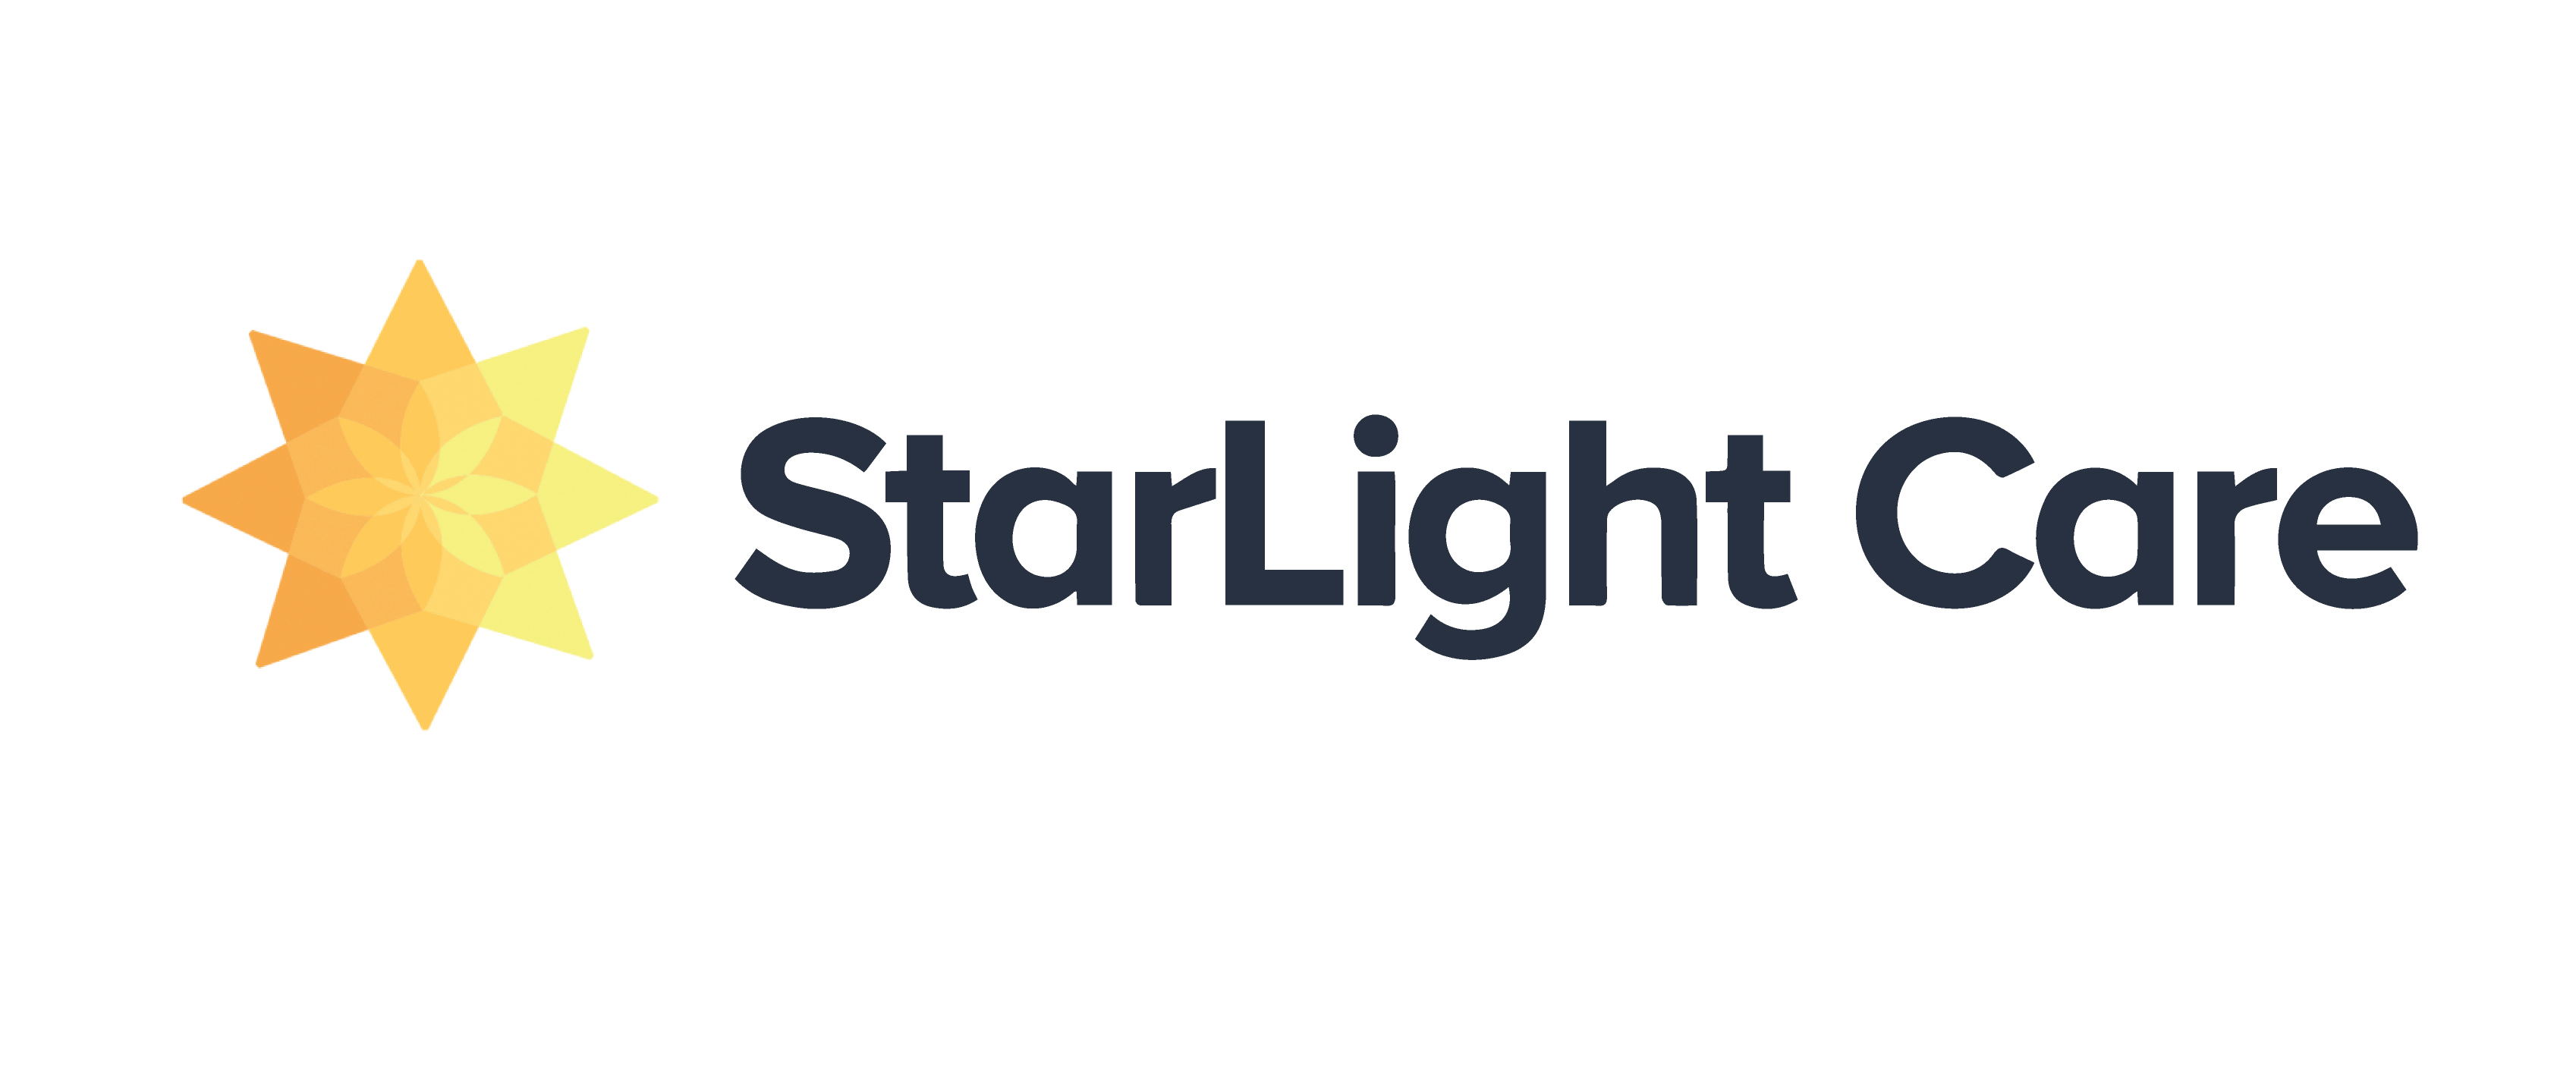 Company logo of Starlight care